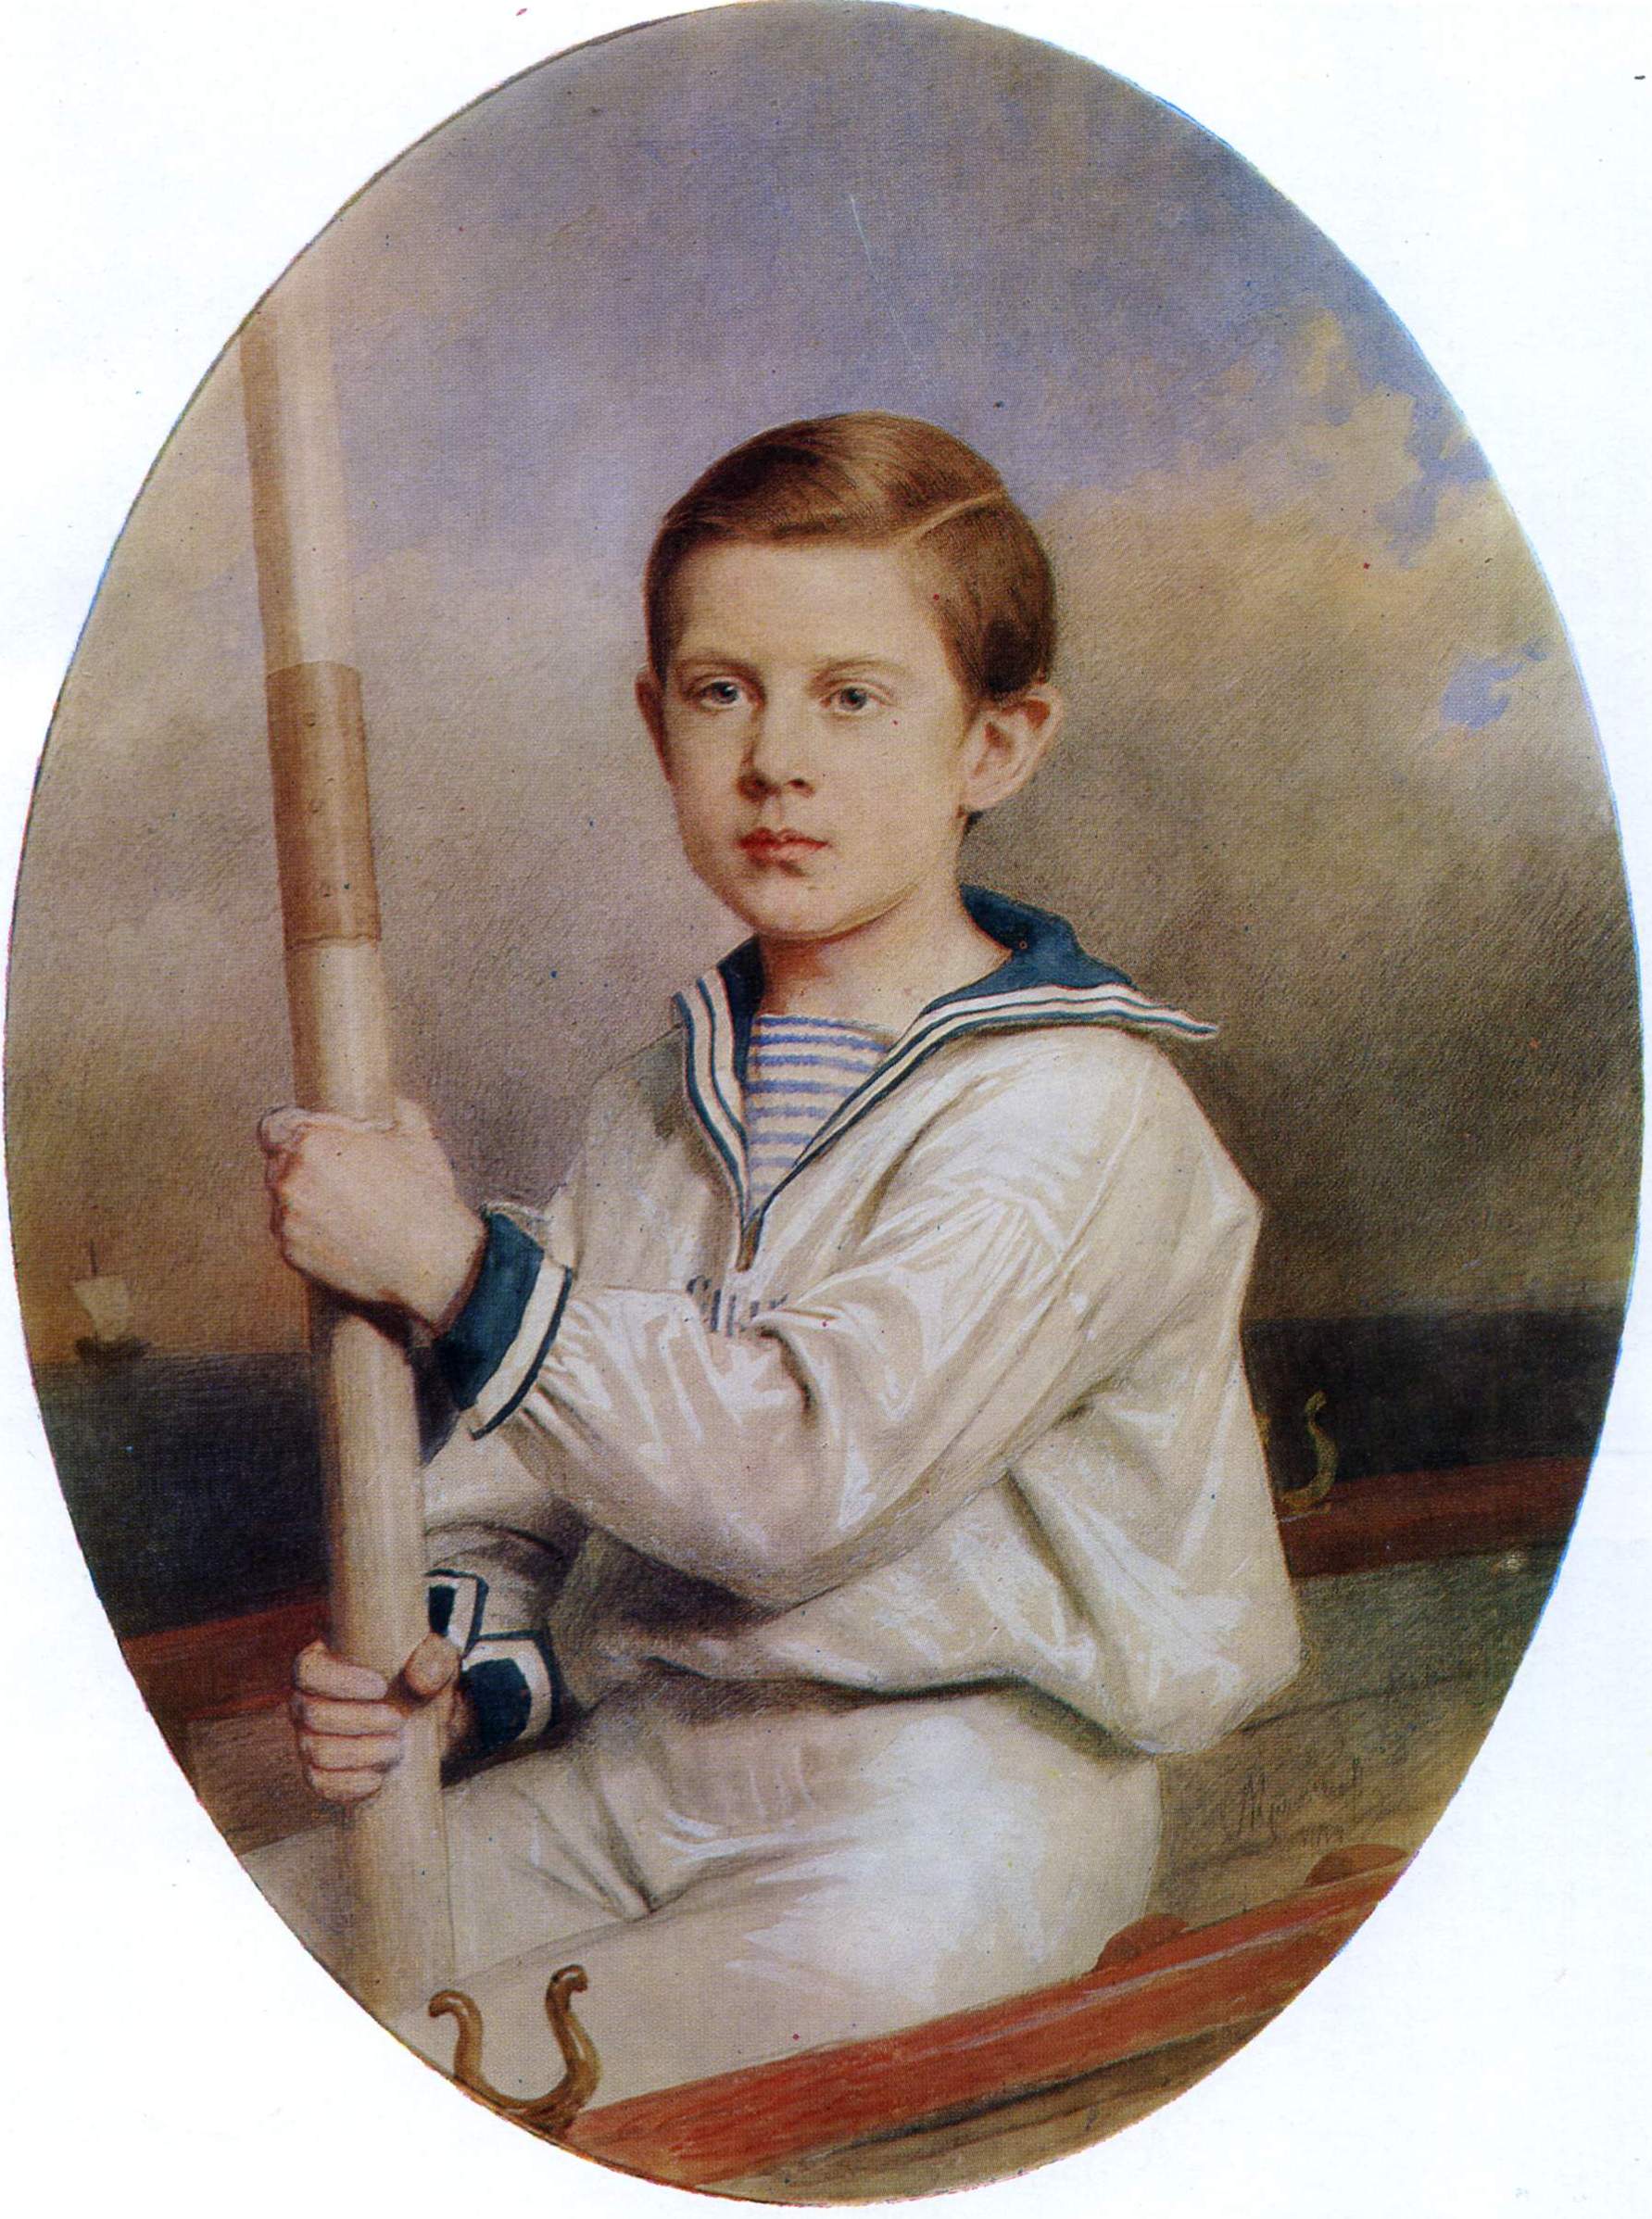 Крамской. Портрет мальчика в матросском костюме. 1870